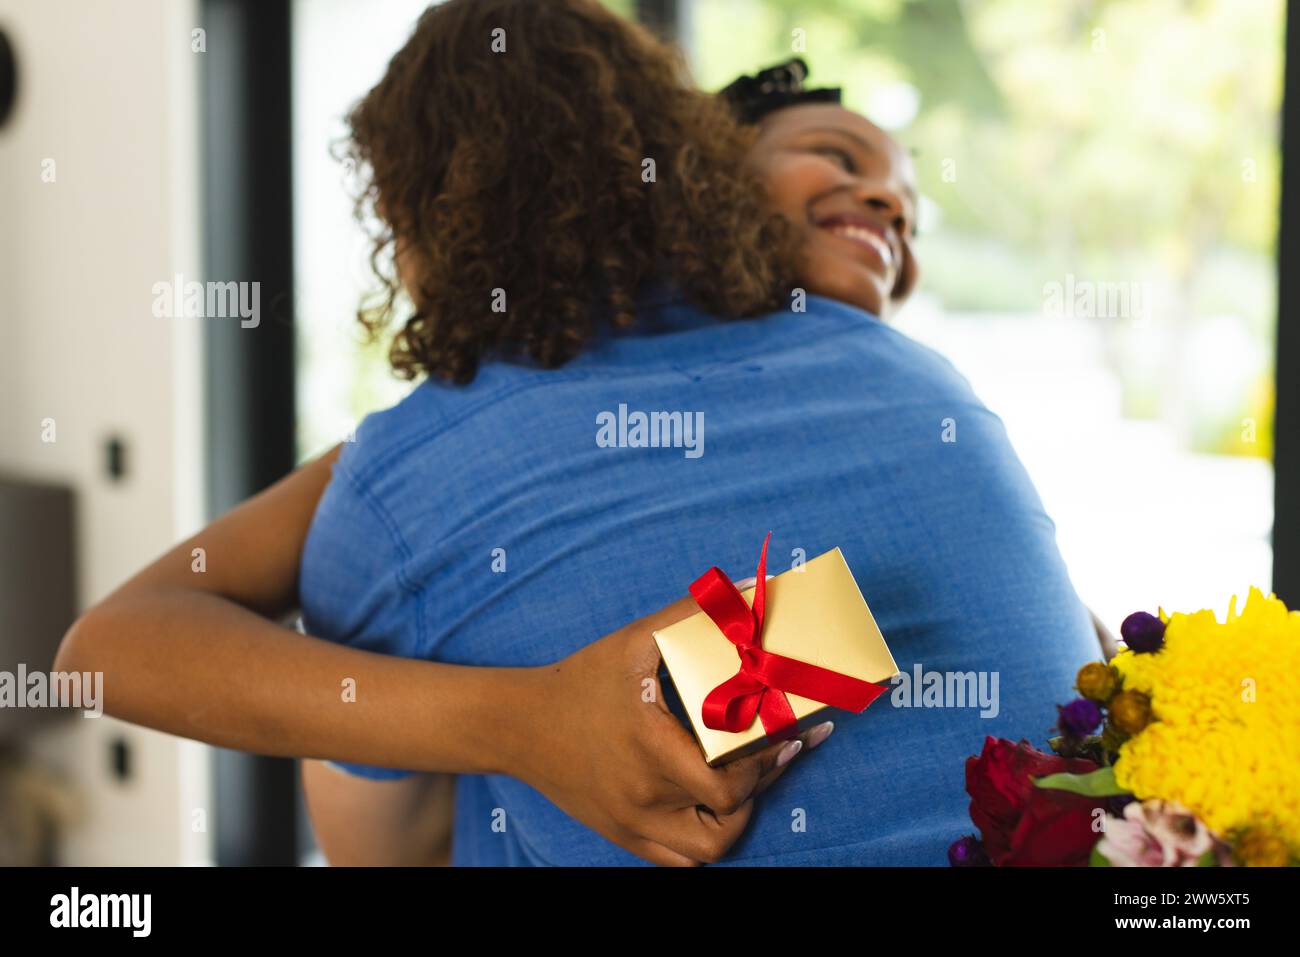 La coppia afro-americana abbraccia calorosamente, donna che tiene un dono Foto Stock